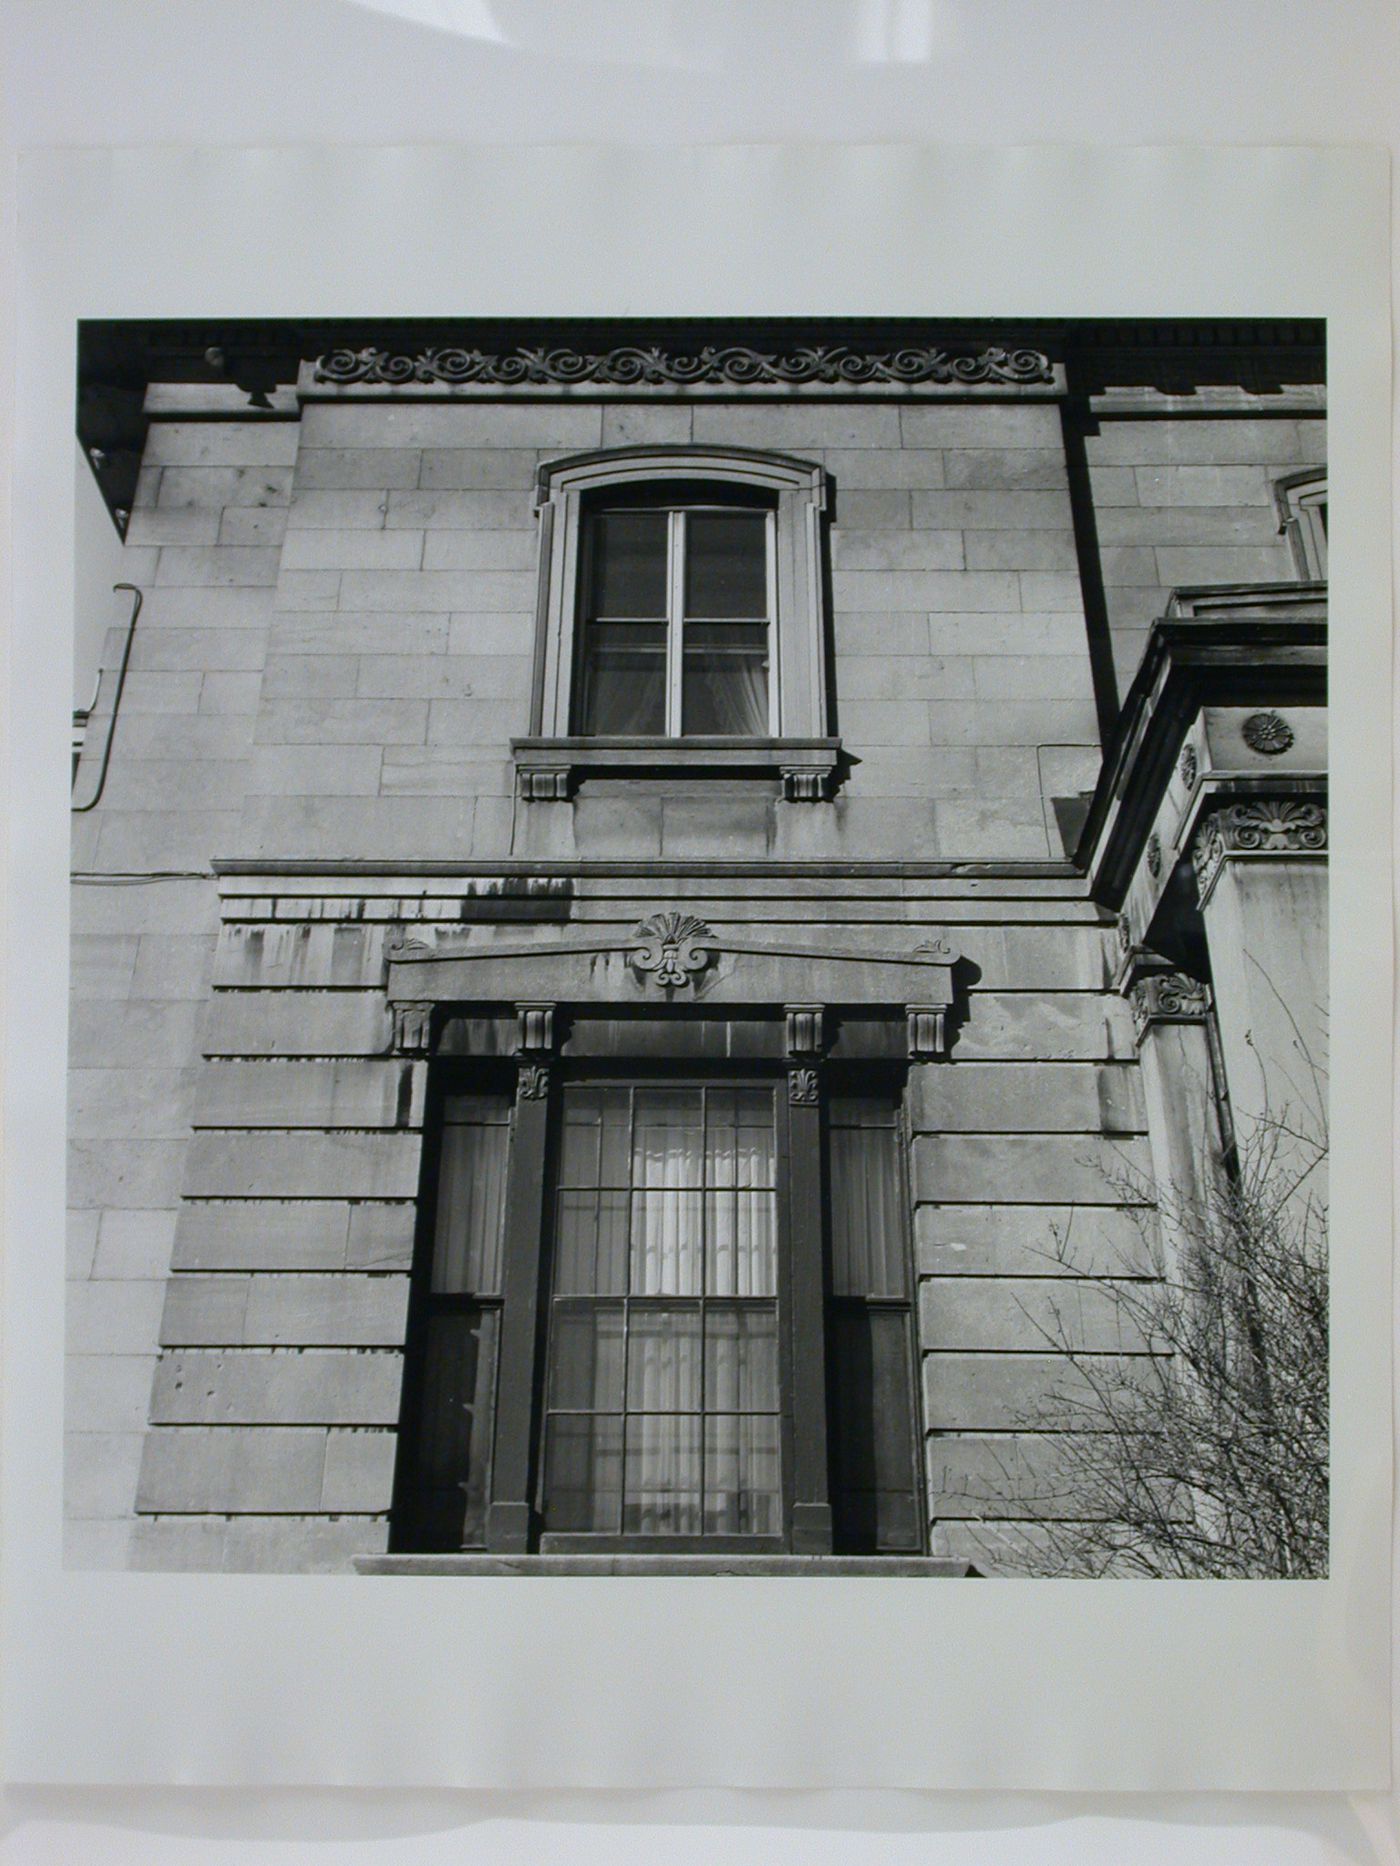 Architectural sculptures in Montréal: 1840-1940